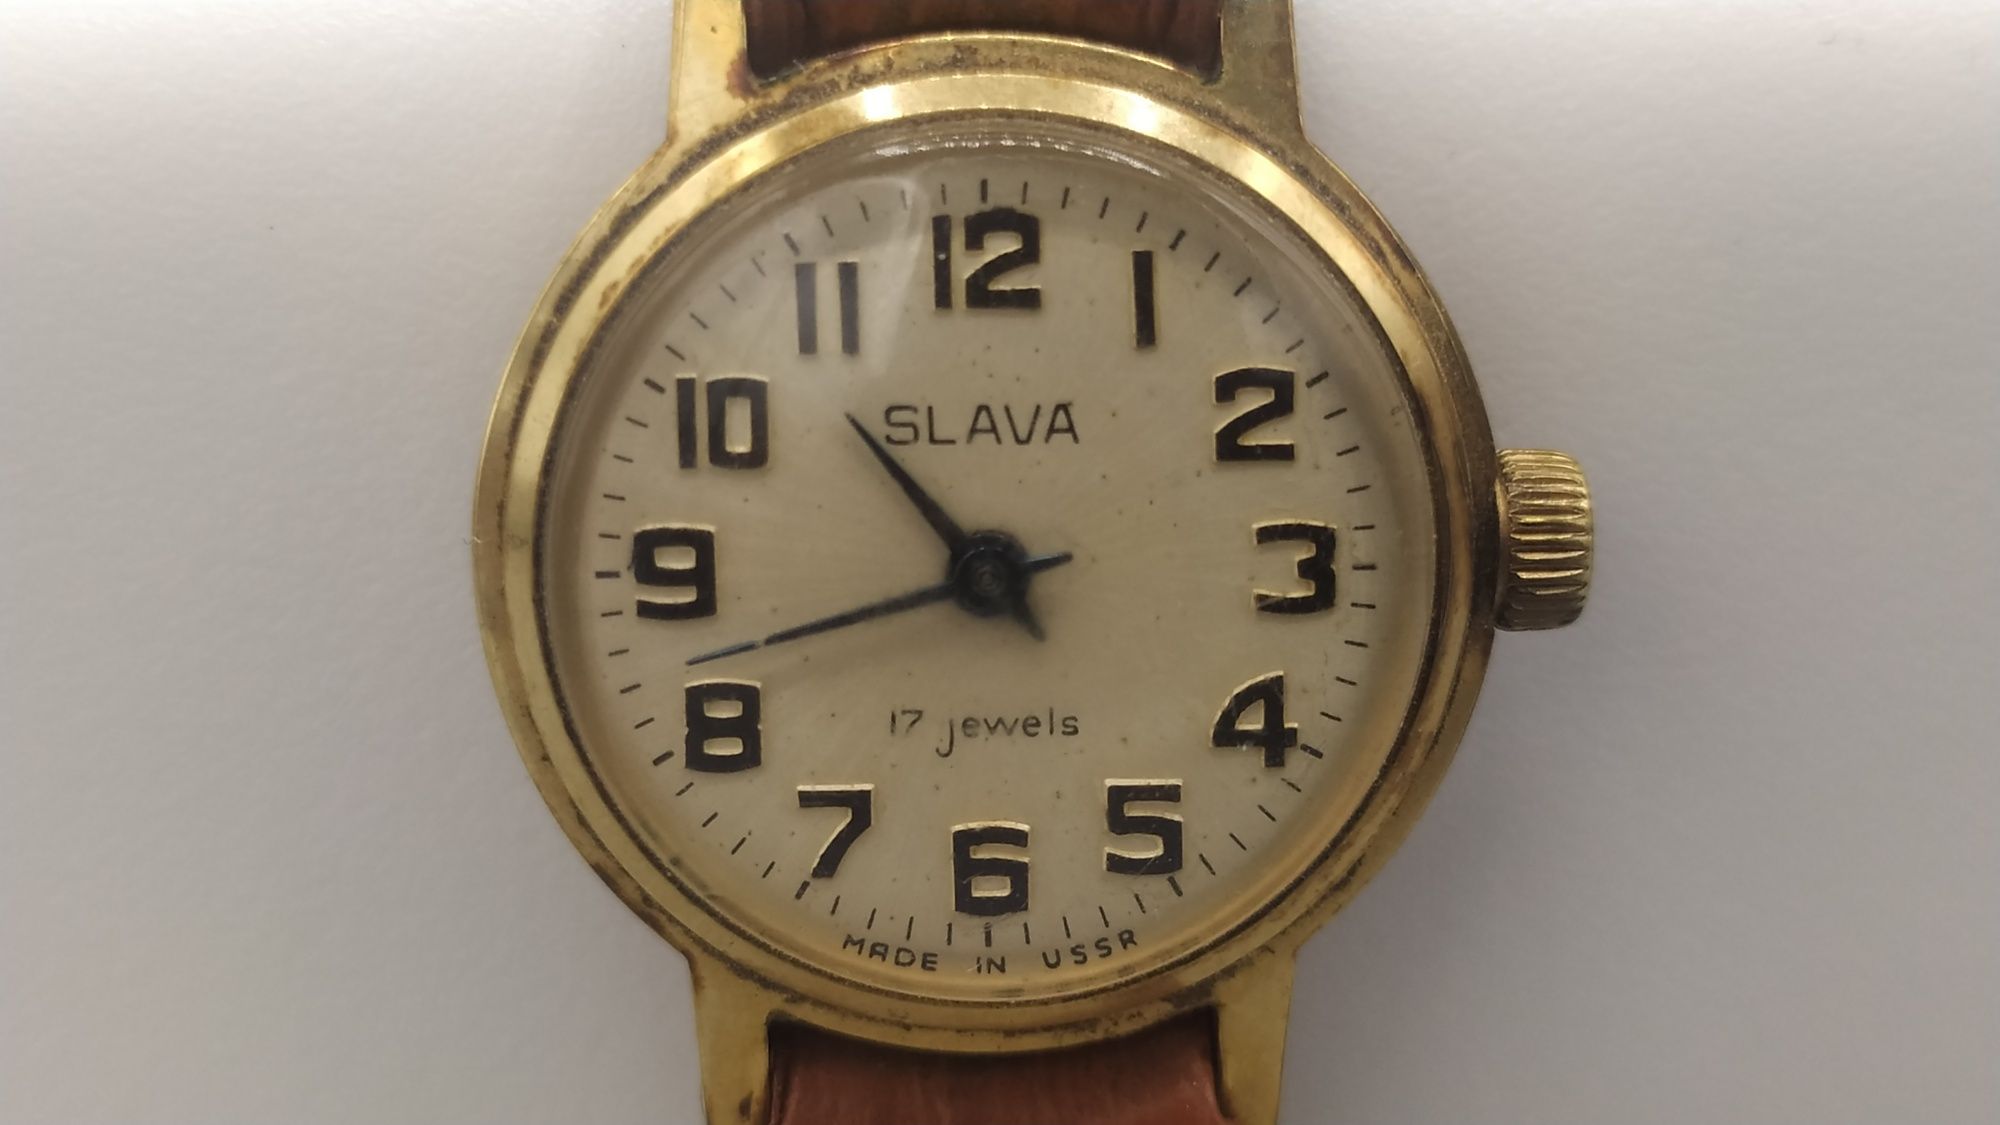 SLAVA damski zegarek z czasów PRL 17 jewels sprawny pasek skórzany